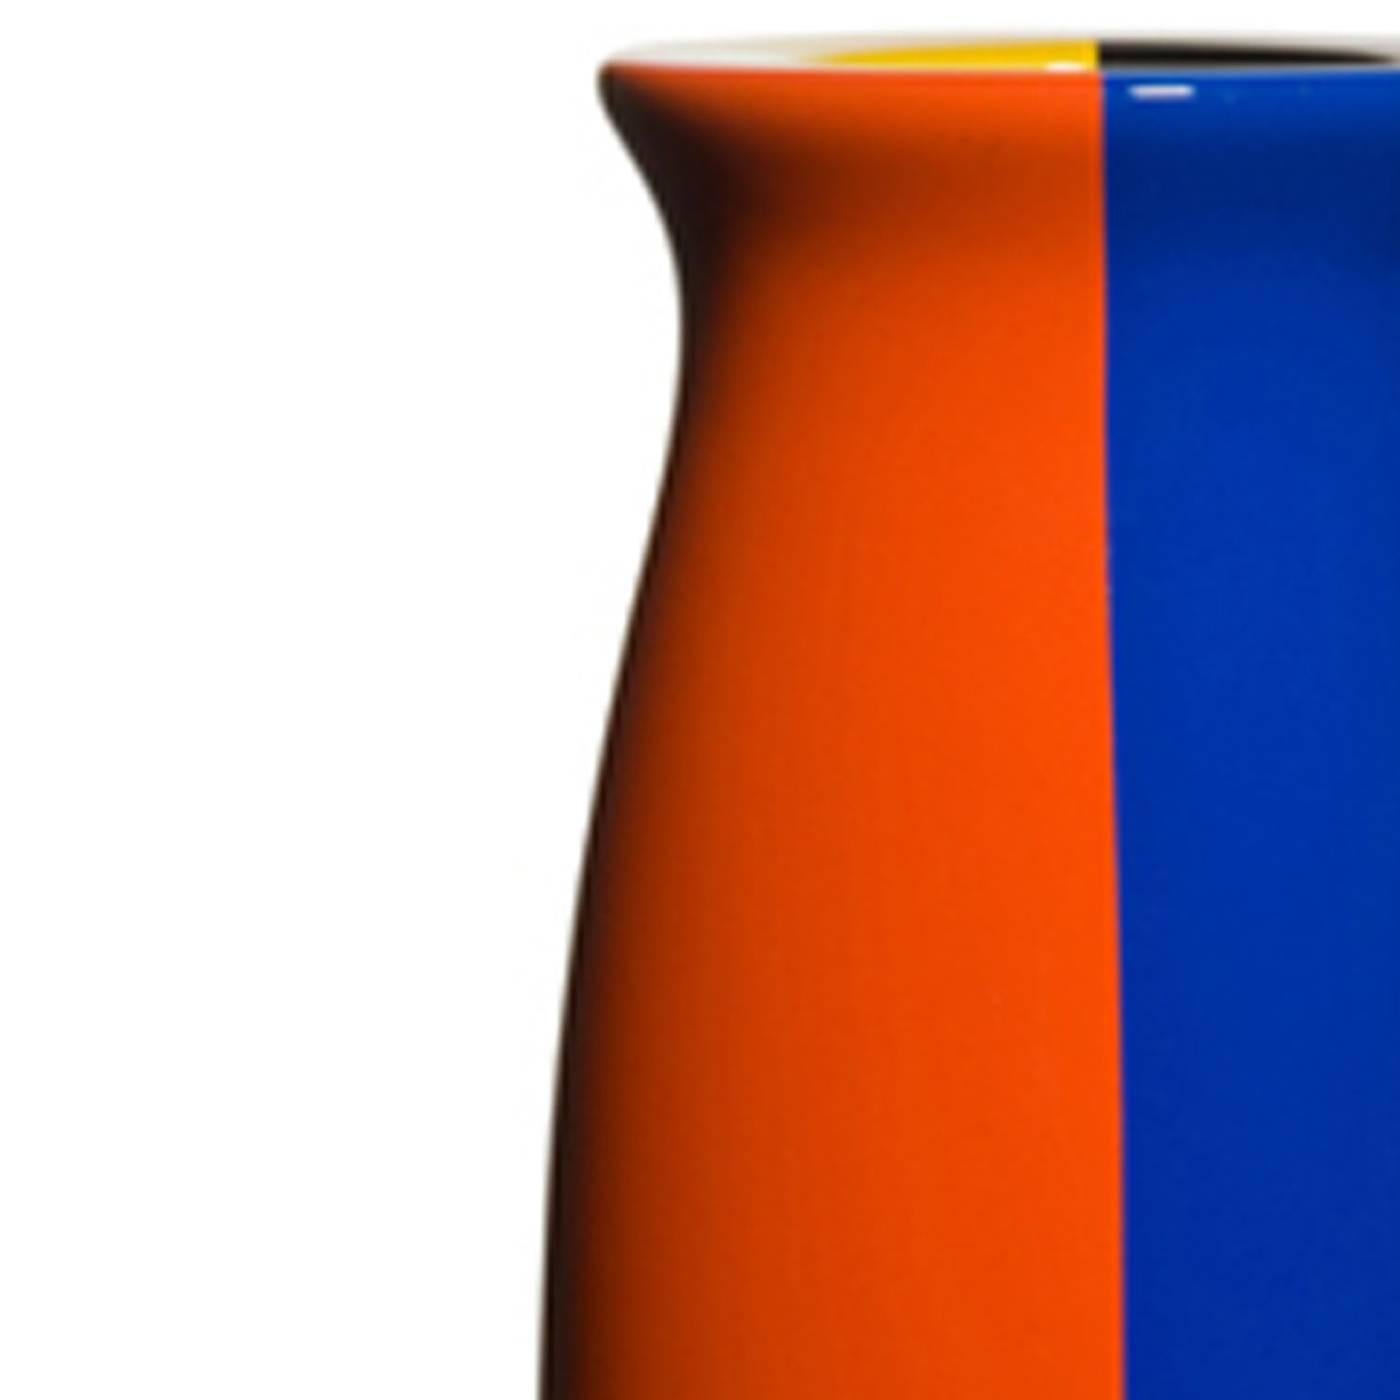 Ce vase, avec son attrait moderne et sa combinaison de couleurs frappantes, s'imposera dans n'importe quel décor. Faisant partie d'une série limitée de 50 pièces conçues par Alessandro Mendini, il est fabriqué en fibre de verre et décoré selon des